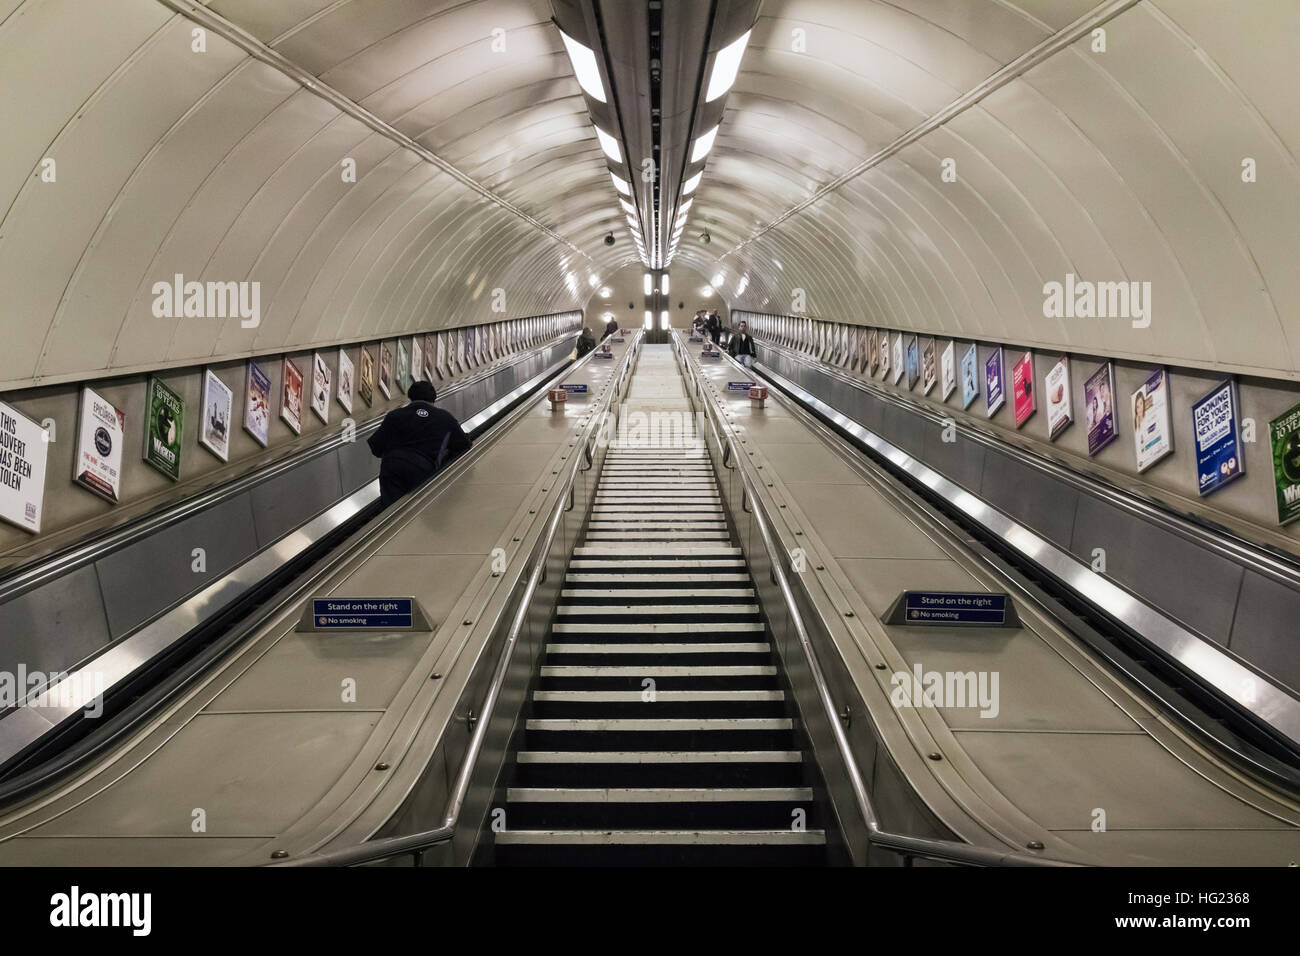 Londres, UK - 5 octobre 2016, passage descendant dans le métro de Londres Banque D'Images